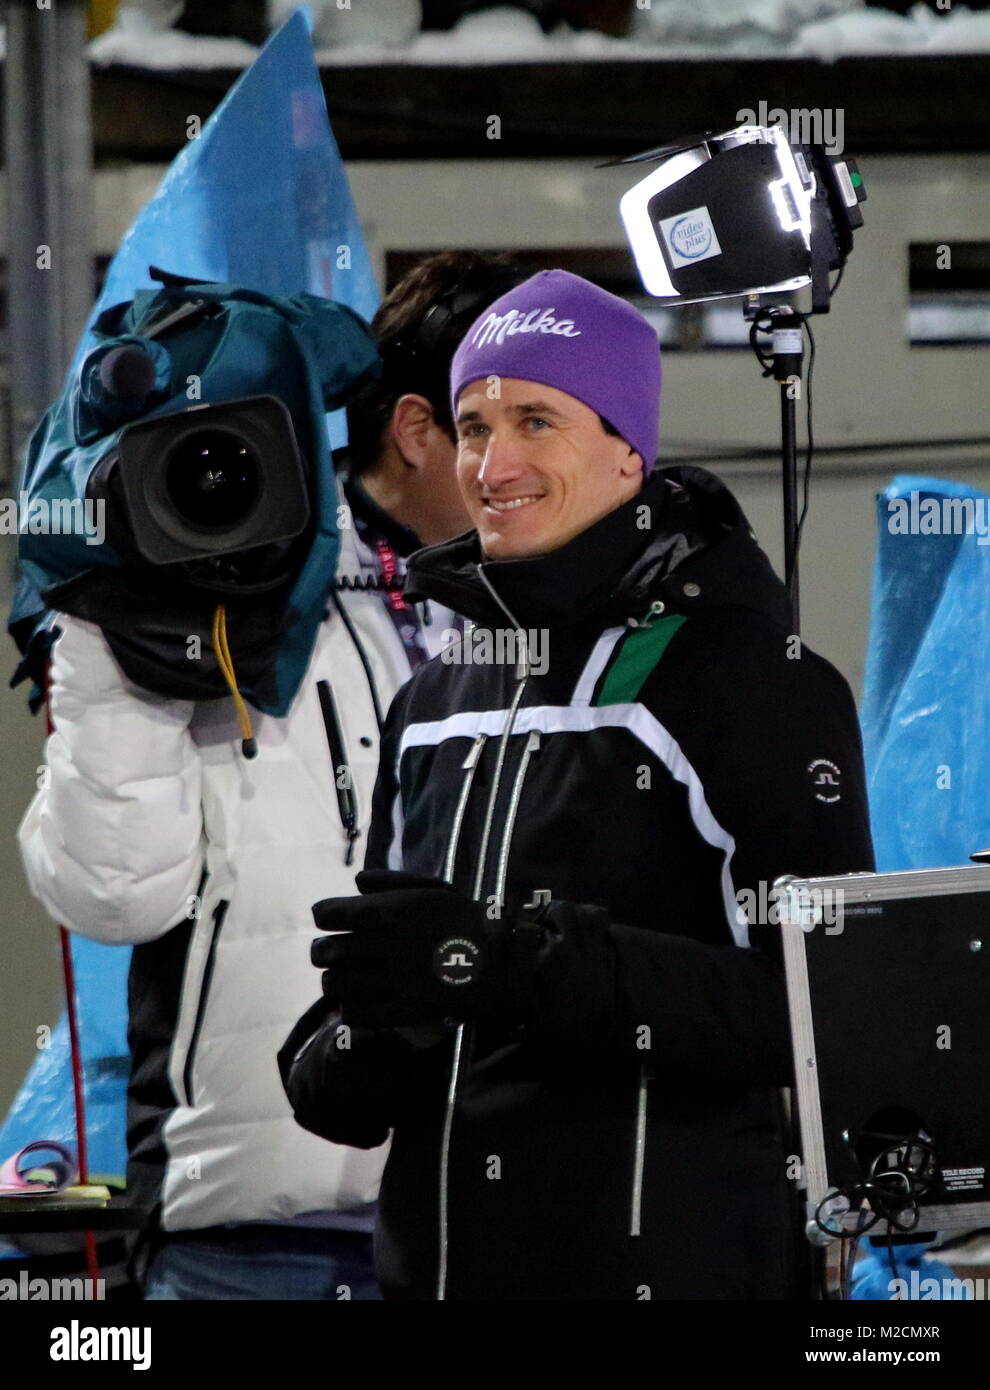 Martin Schmitt, bei Skisprung-Experte Ex-Weltmeister, Eurosport, Qualfikation für 63. Vierschanzentournee Auftaktspringen Oberstdorf Foto de stock